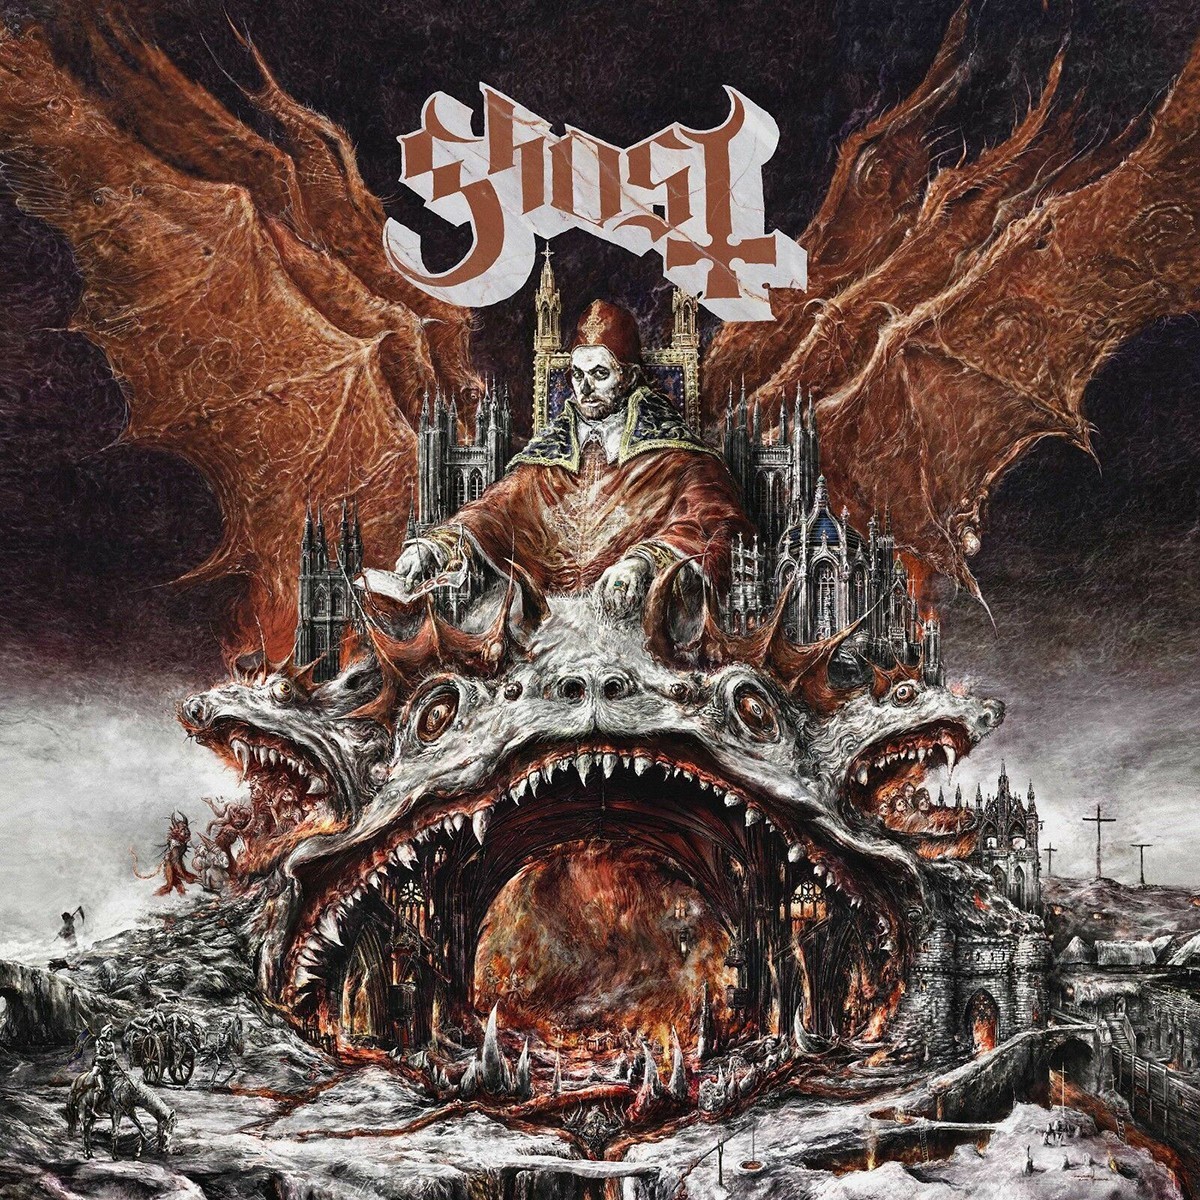 Couverture de l'album "Prequelle" par Ghost